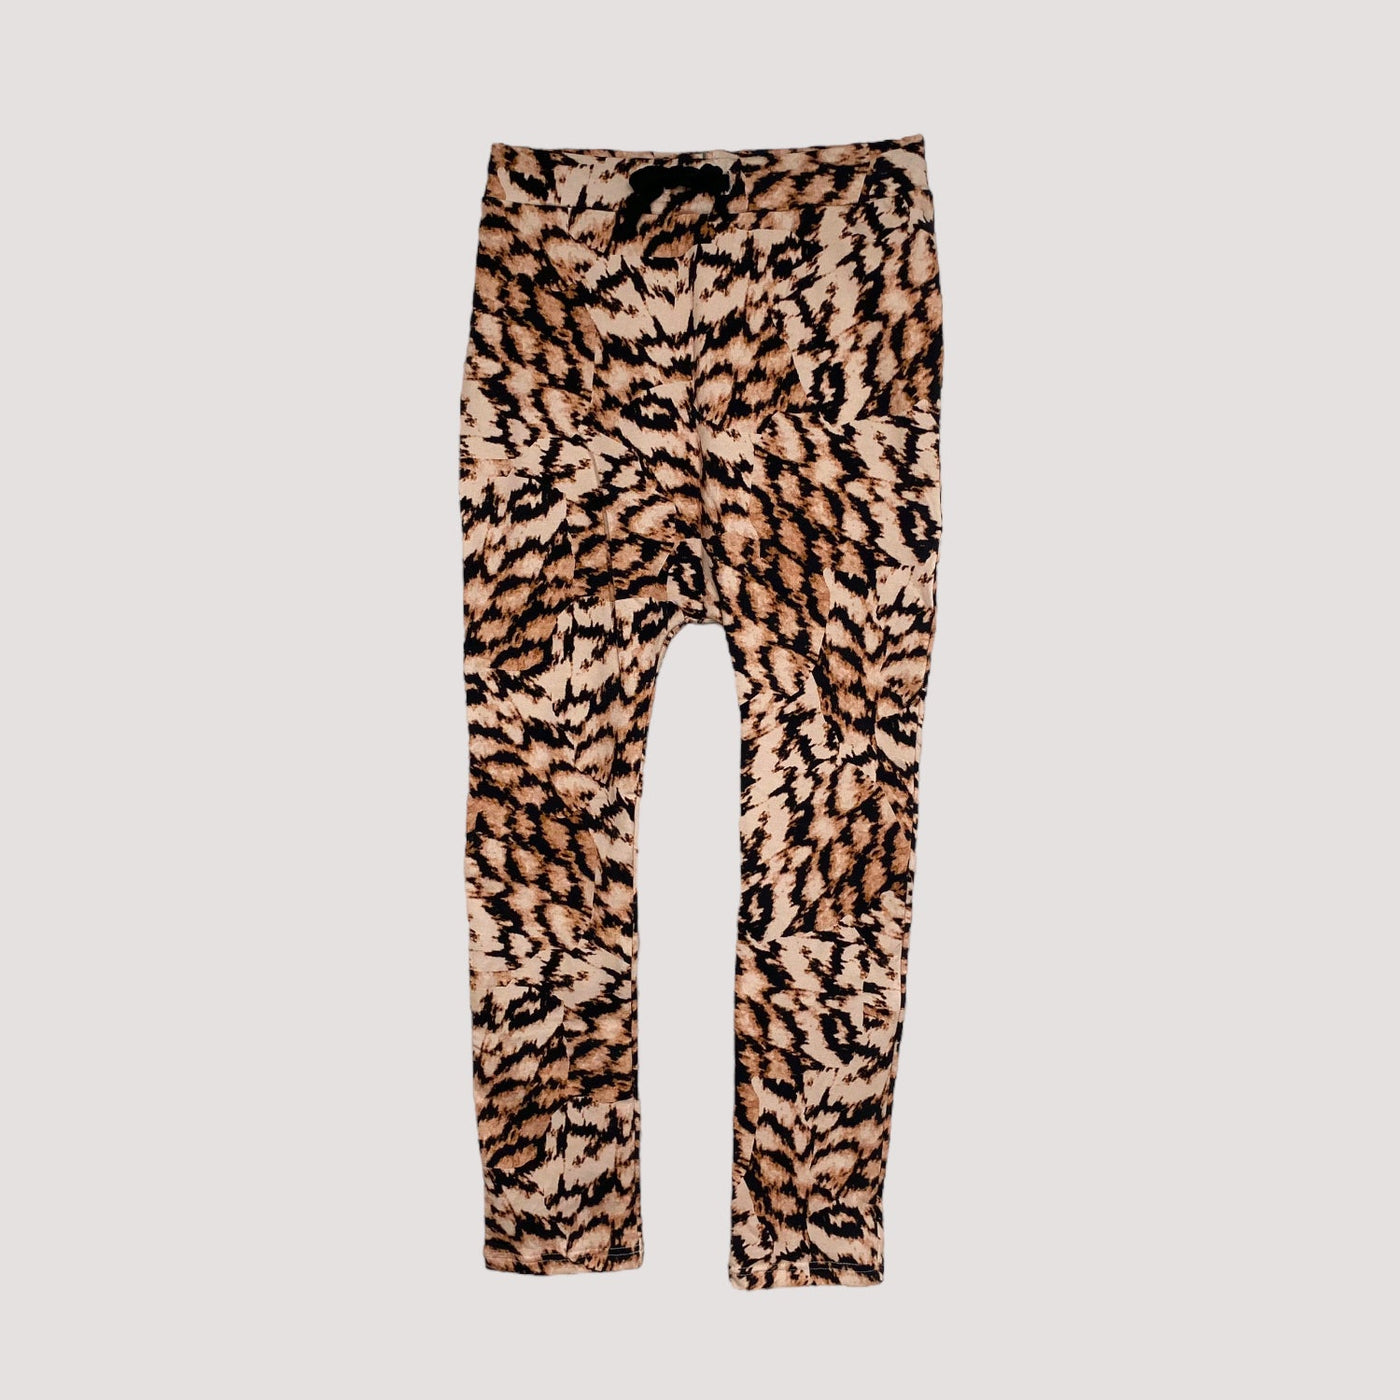 Vimma baggy pants, leopard | 150cm